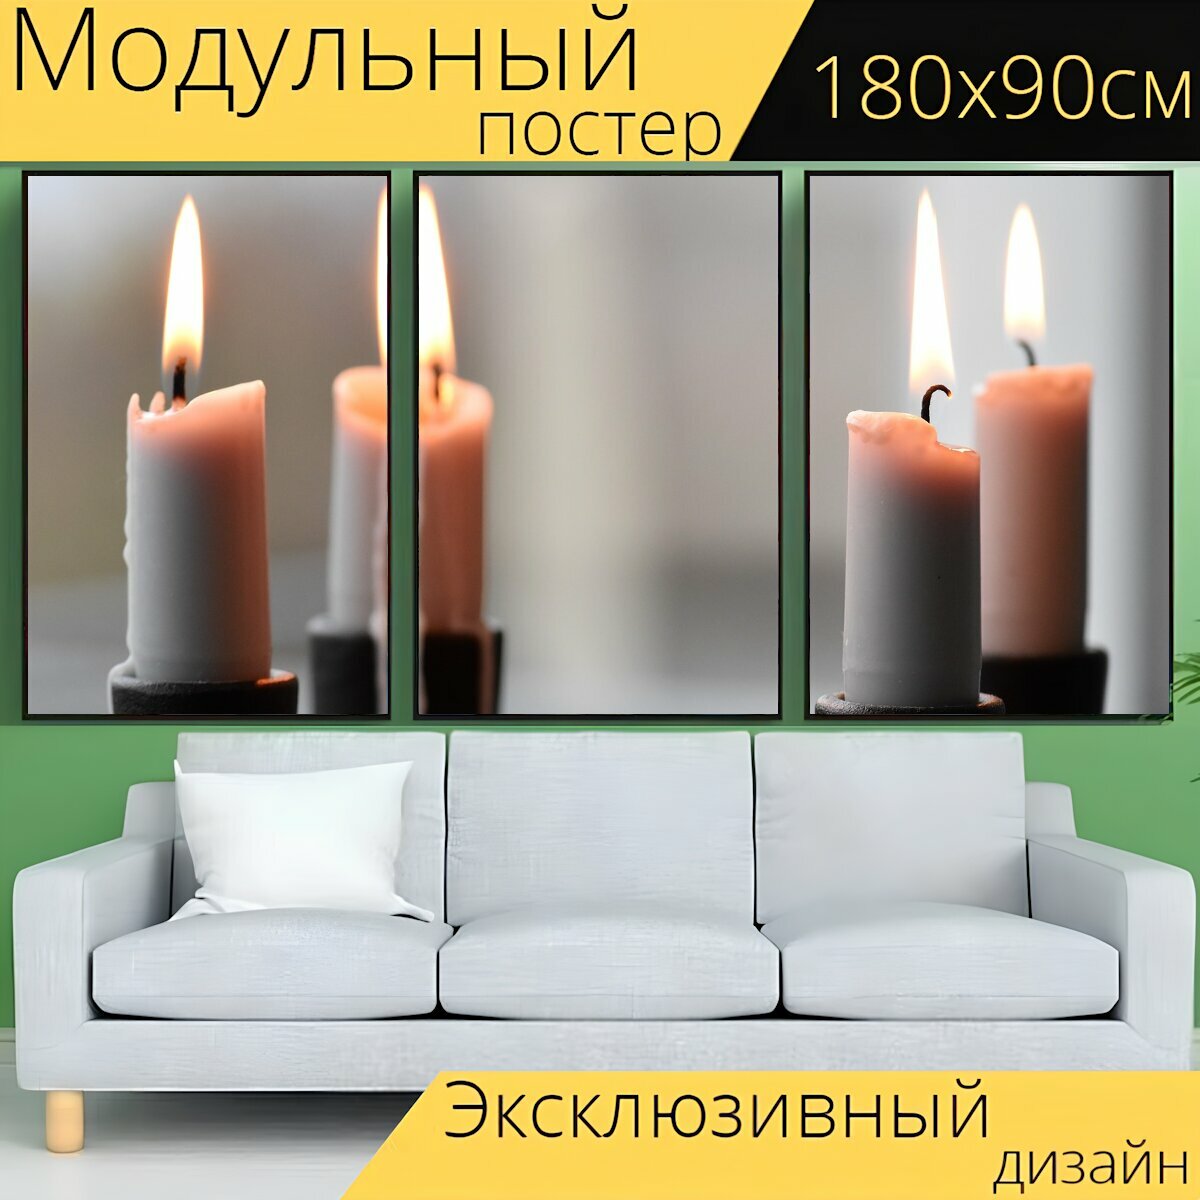 Модульный постер "Свеча, свет, огонь" 180 x 90 см. для интерьера